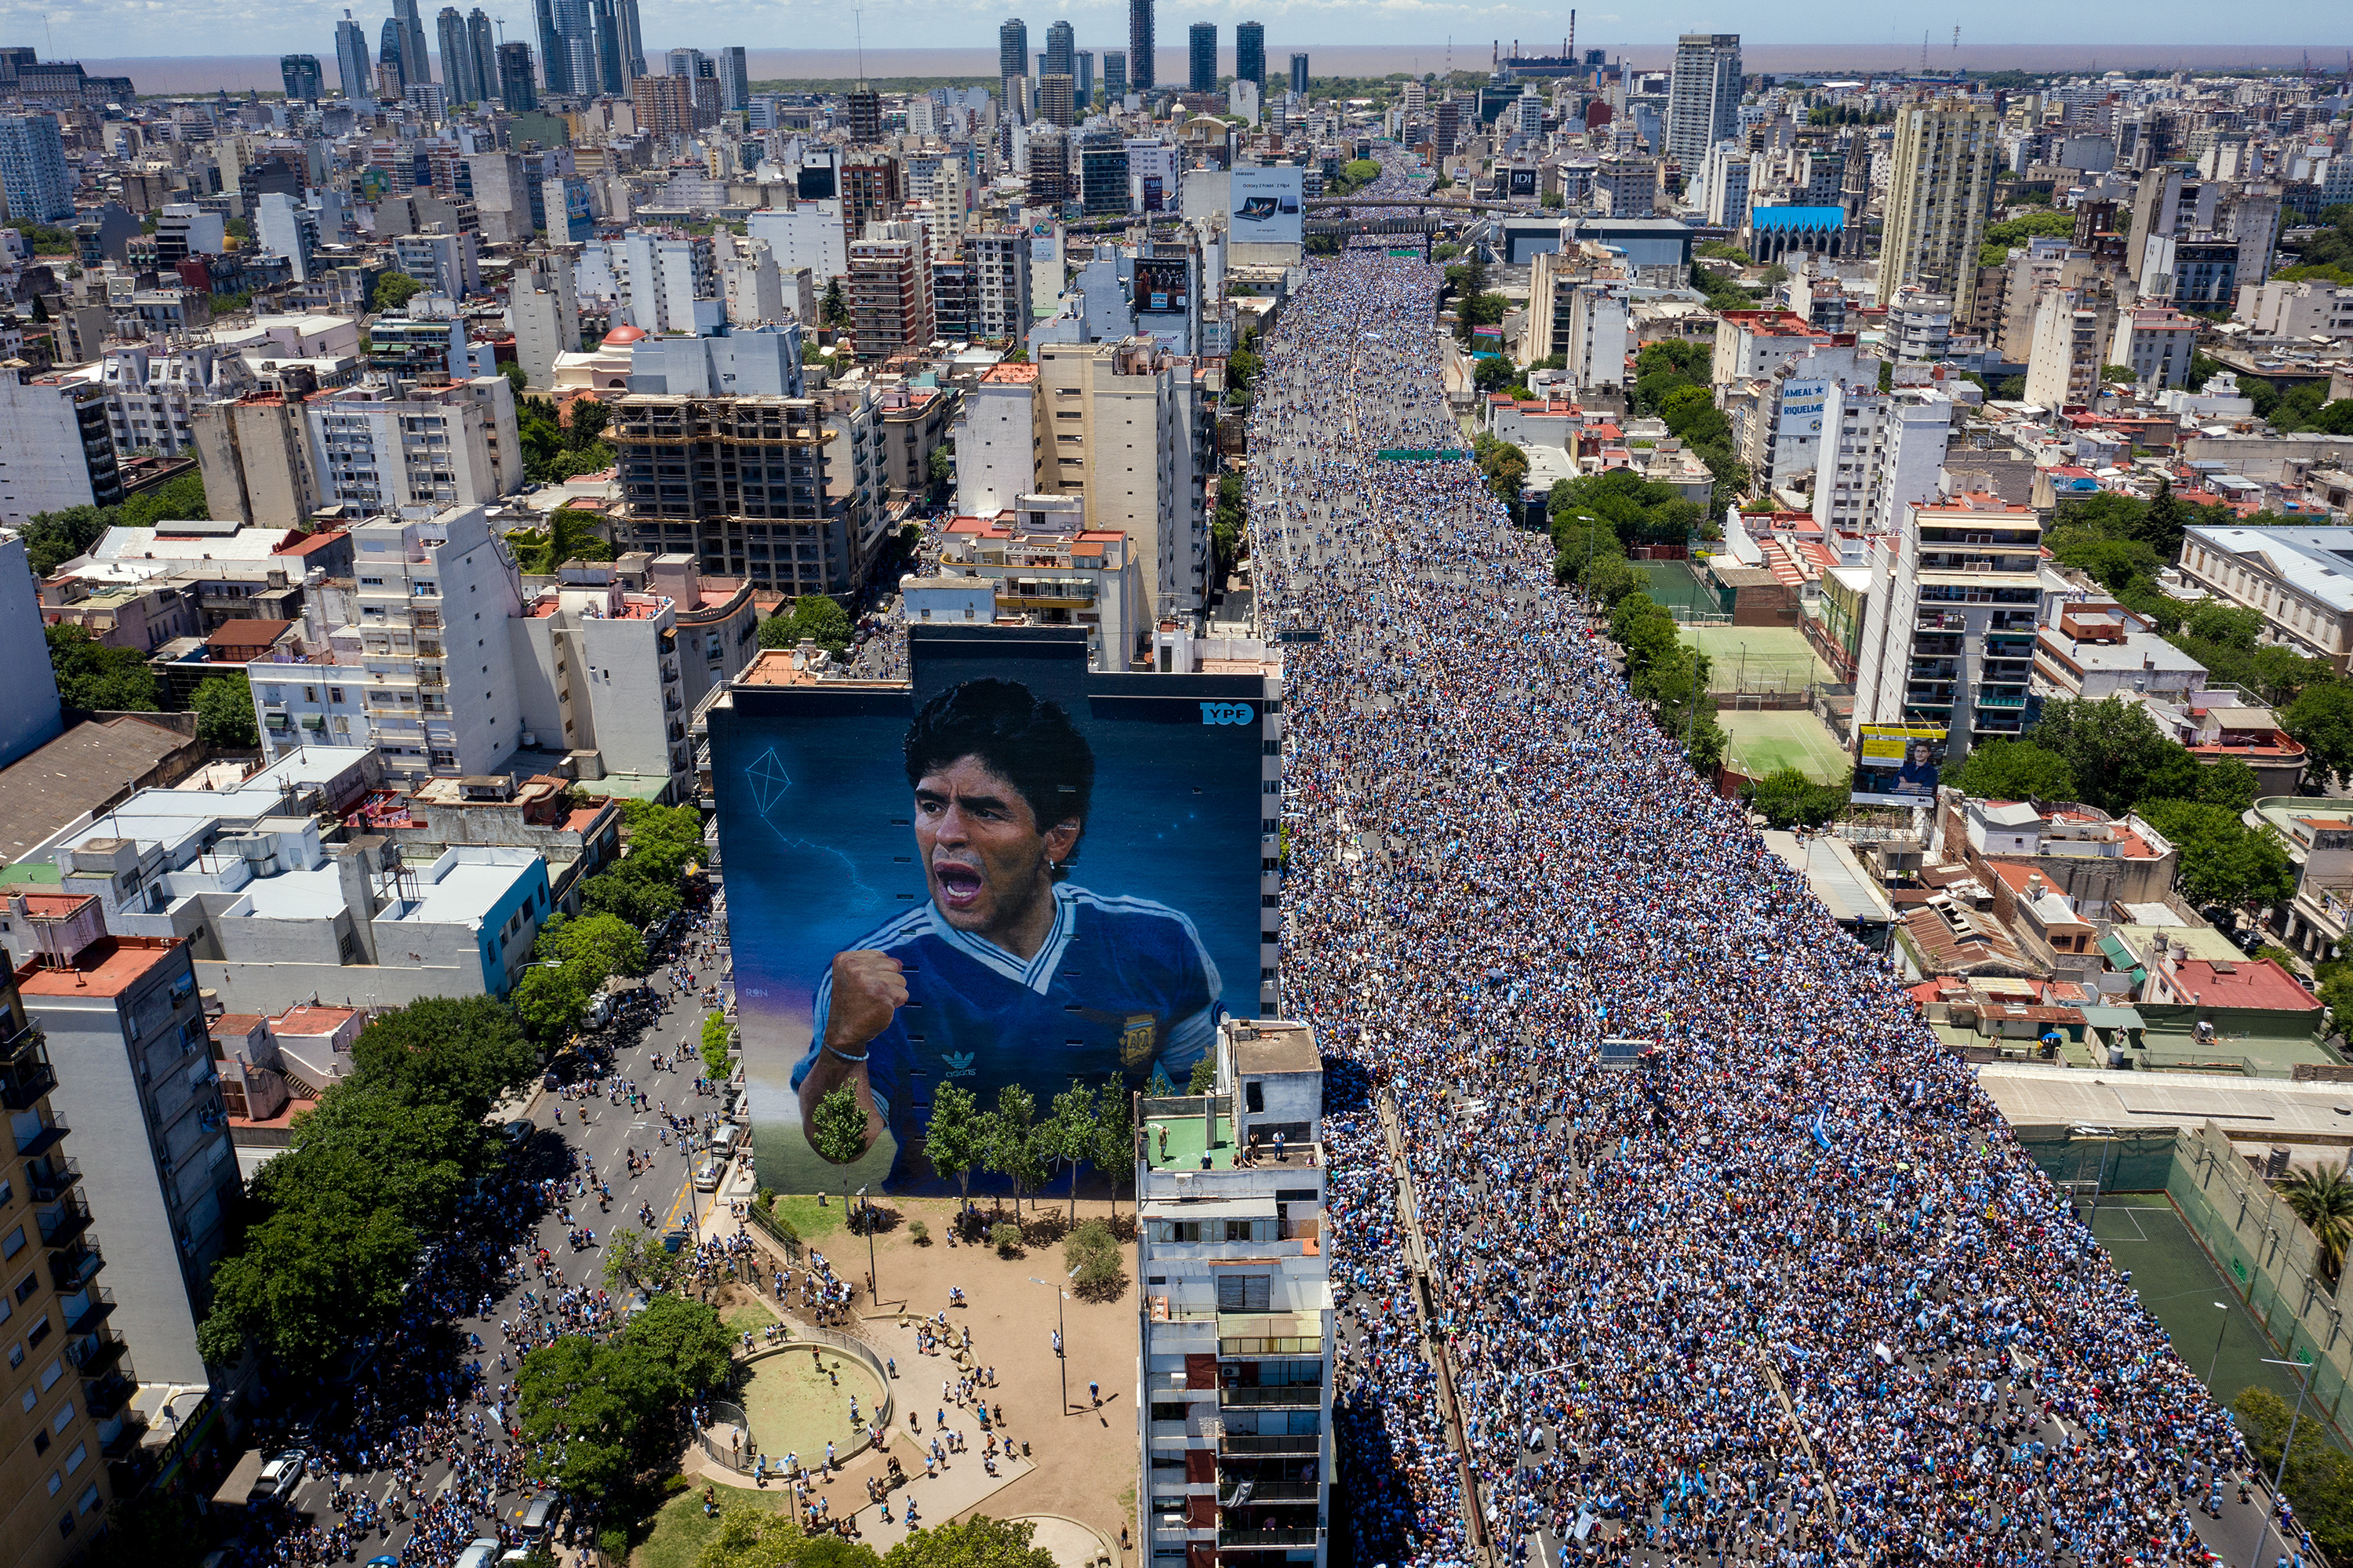 Carte postale de la foule dans la rue à côté de l'impressionnante peinture murale de Diego Maradona (Charly Díaz Azcue)